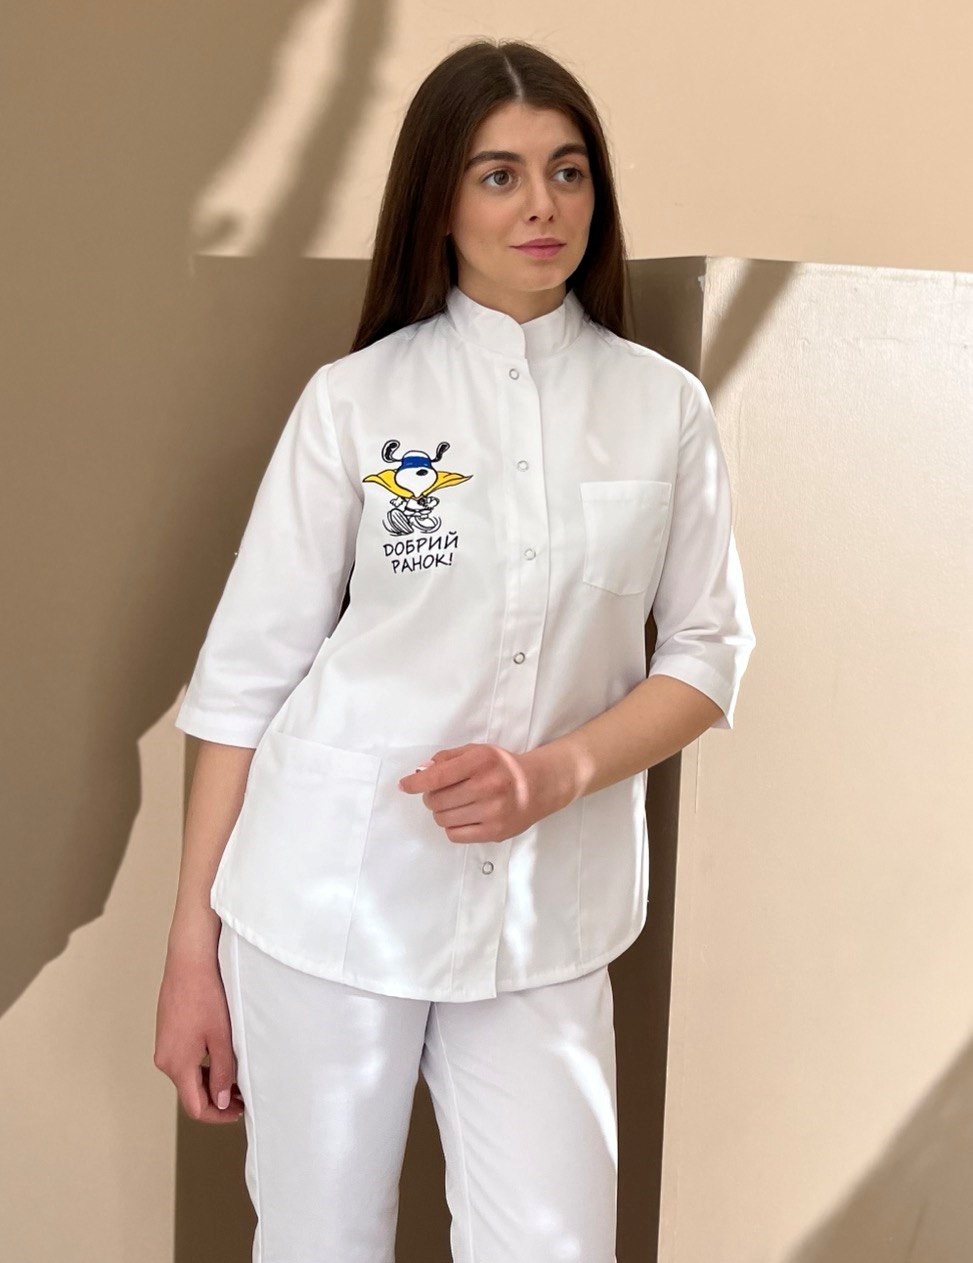 Медицинская куртка арт.17-02 белого цвета, вышивка "Снуппи"